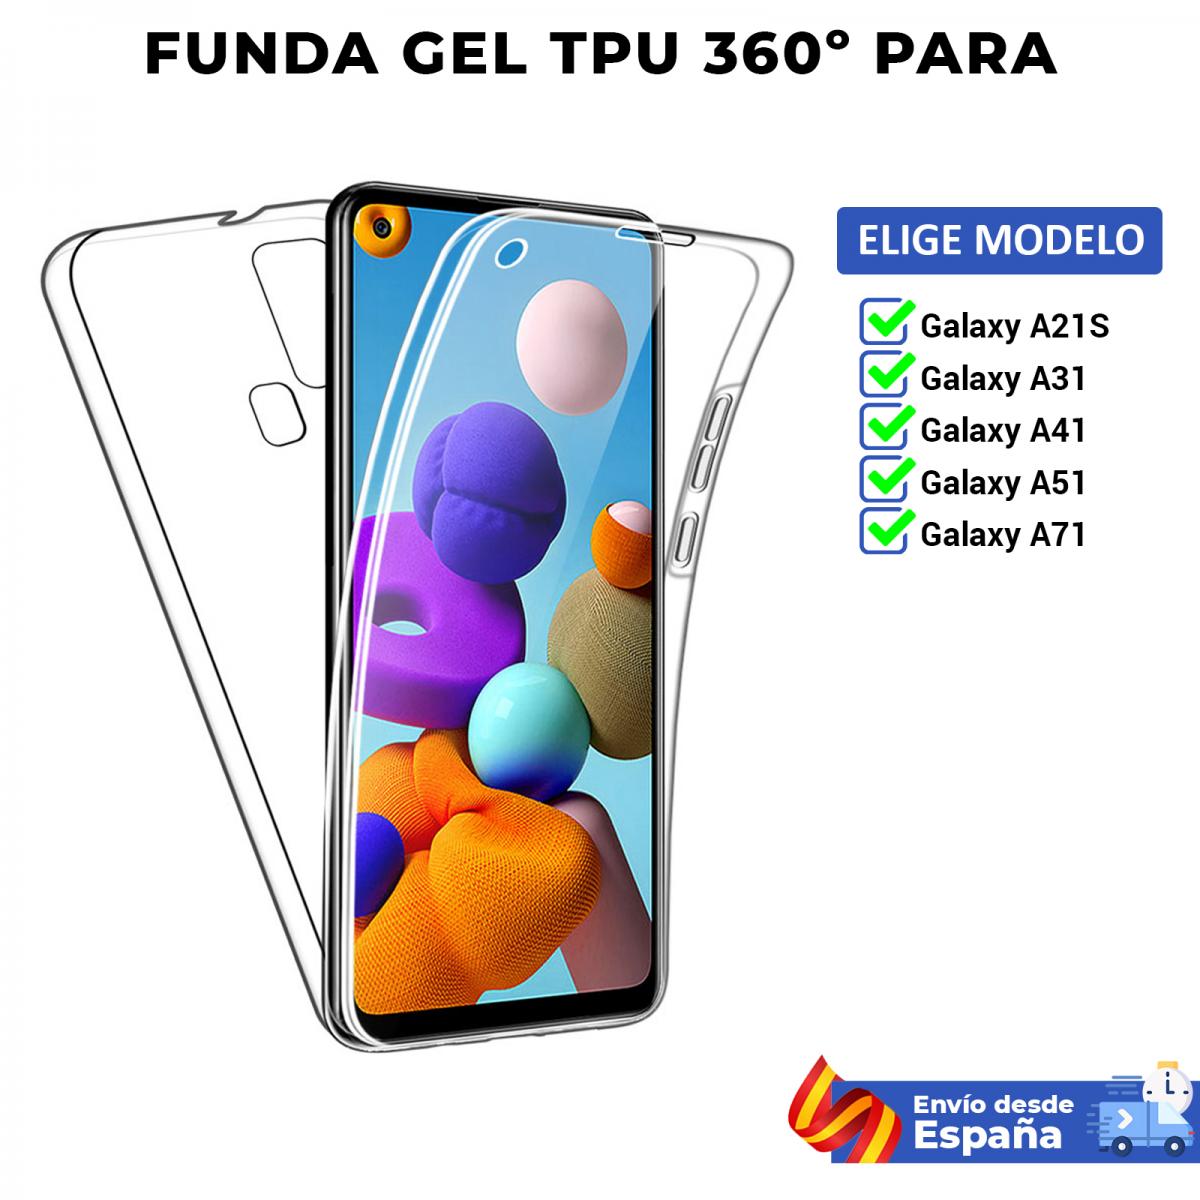 Acostumbrarse a A bordo Fabricación Funda TPU 360 para Samsung Galaxy A21S A31 A41 A51 A71. Carcasa doble cara  transparente de